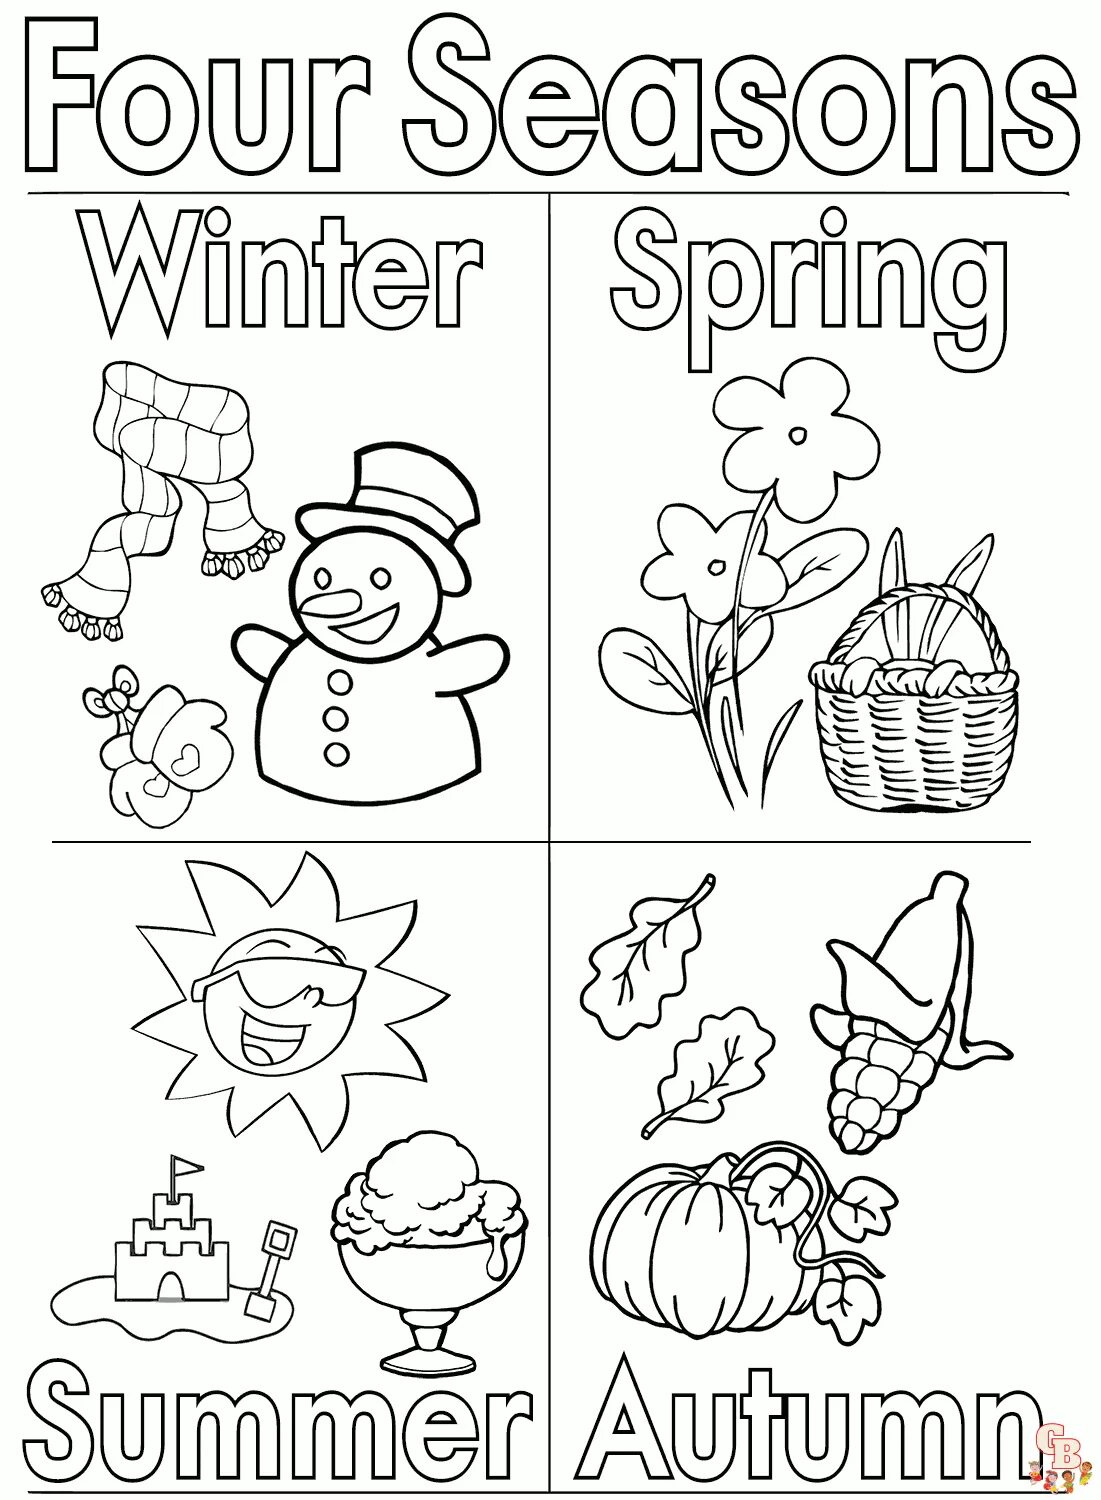 Seasons раскраска. Seasons задания для детей. Времена года на английском раскраска. Английский для малышей времена года. Seasons esl